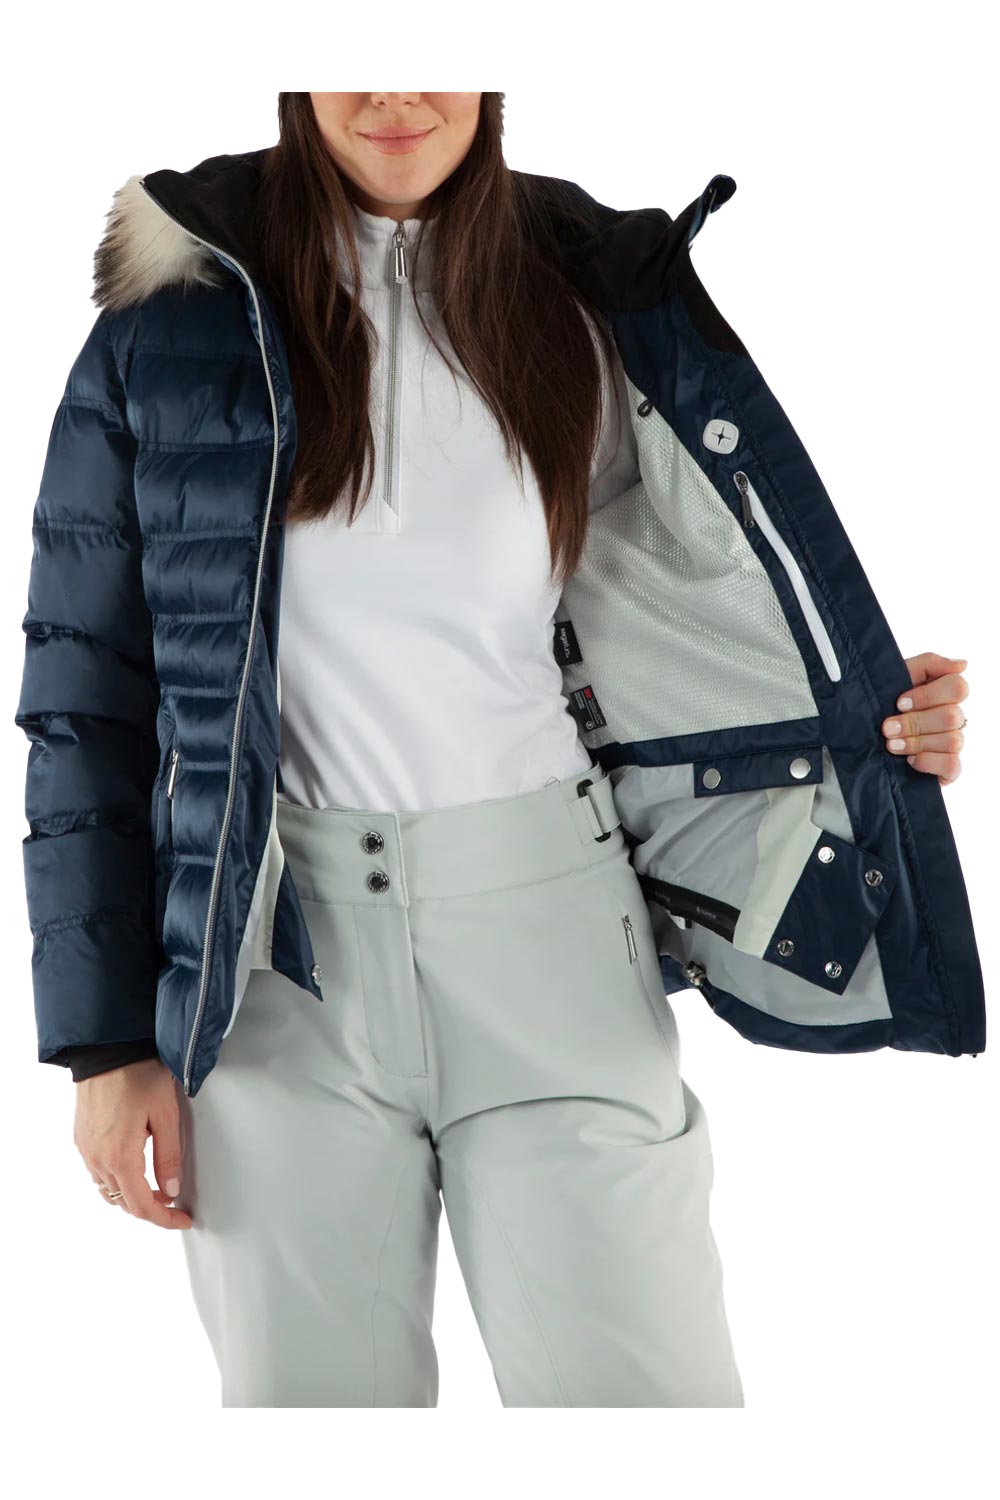 women's Sunice Fiona ski jacket, blue with fur hood